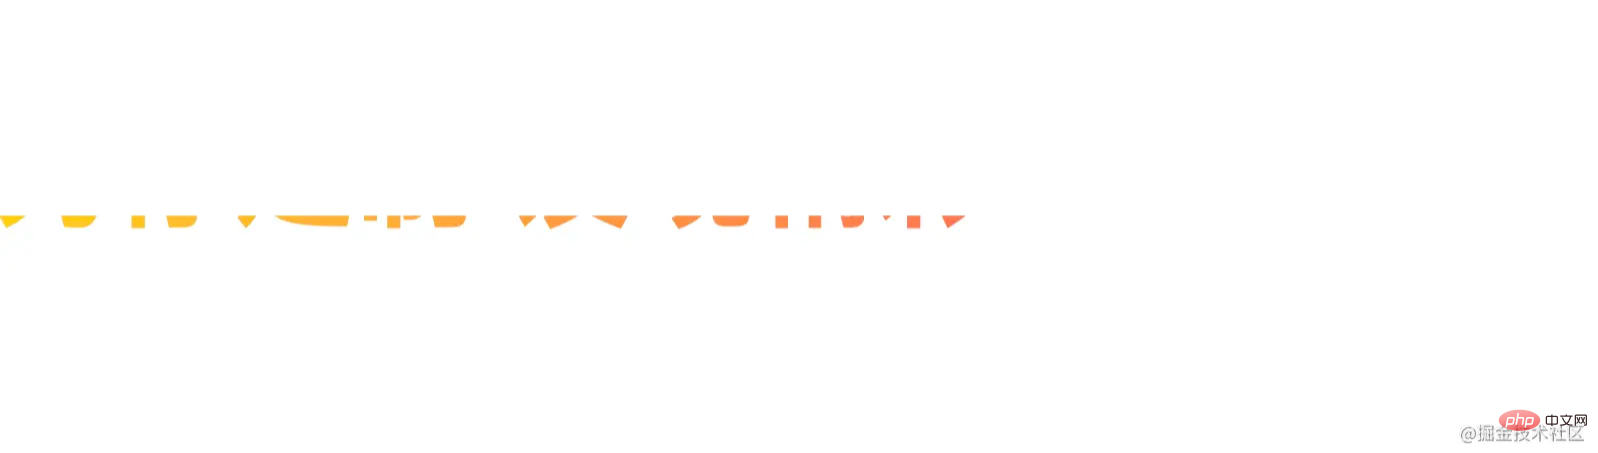 给文字添加渐变、描边、投影效果的两种方式（CSS和SVG）